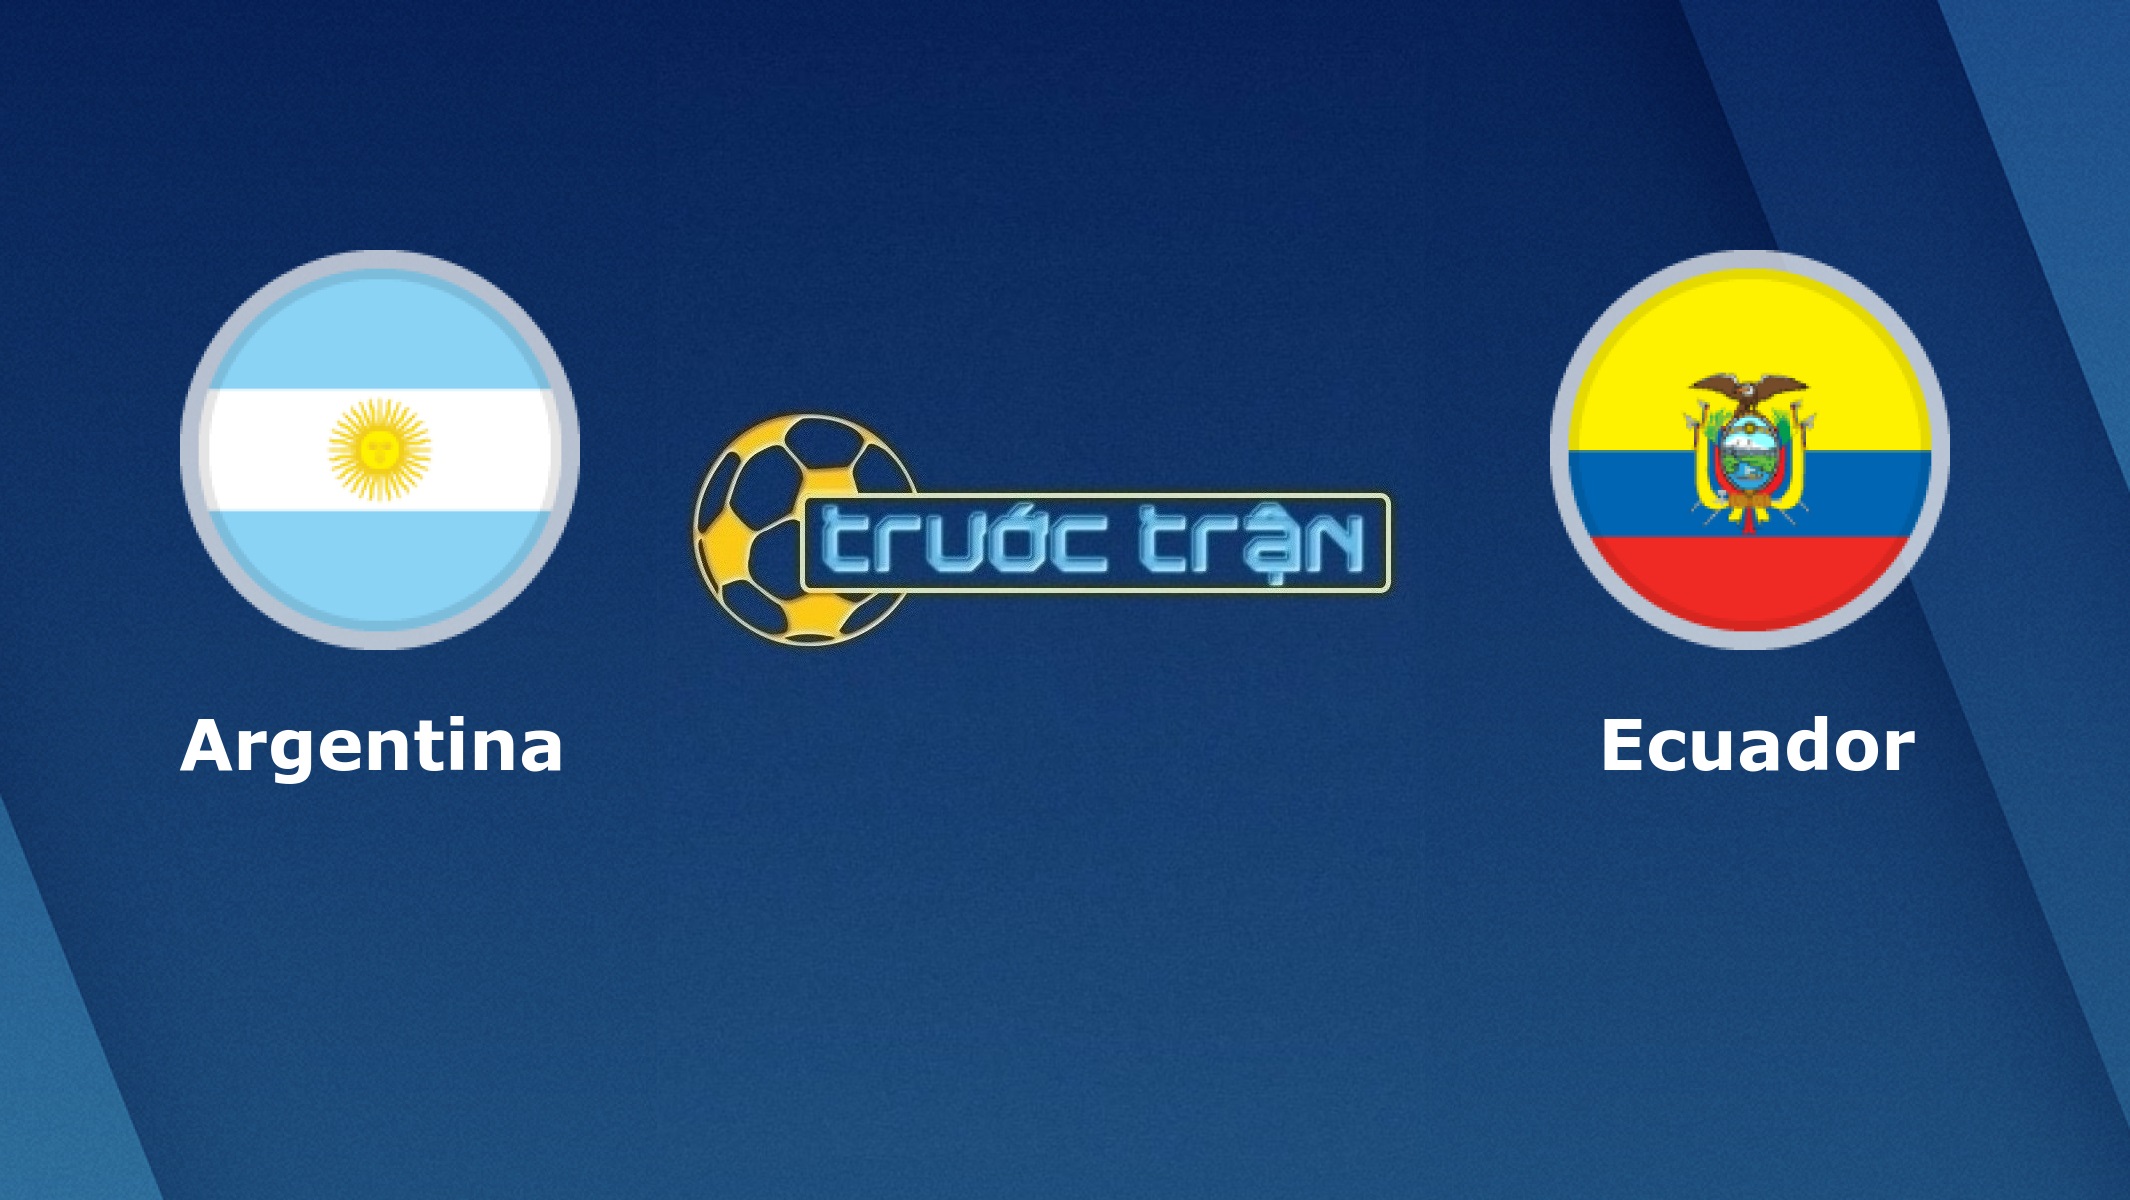 Argentina vs Ecuador –Tip kèo bóng đá hôm nay – 09/10